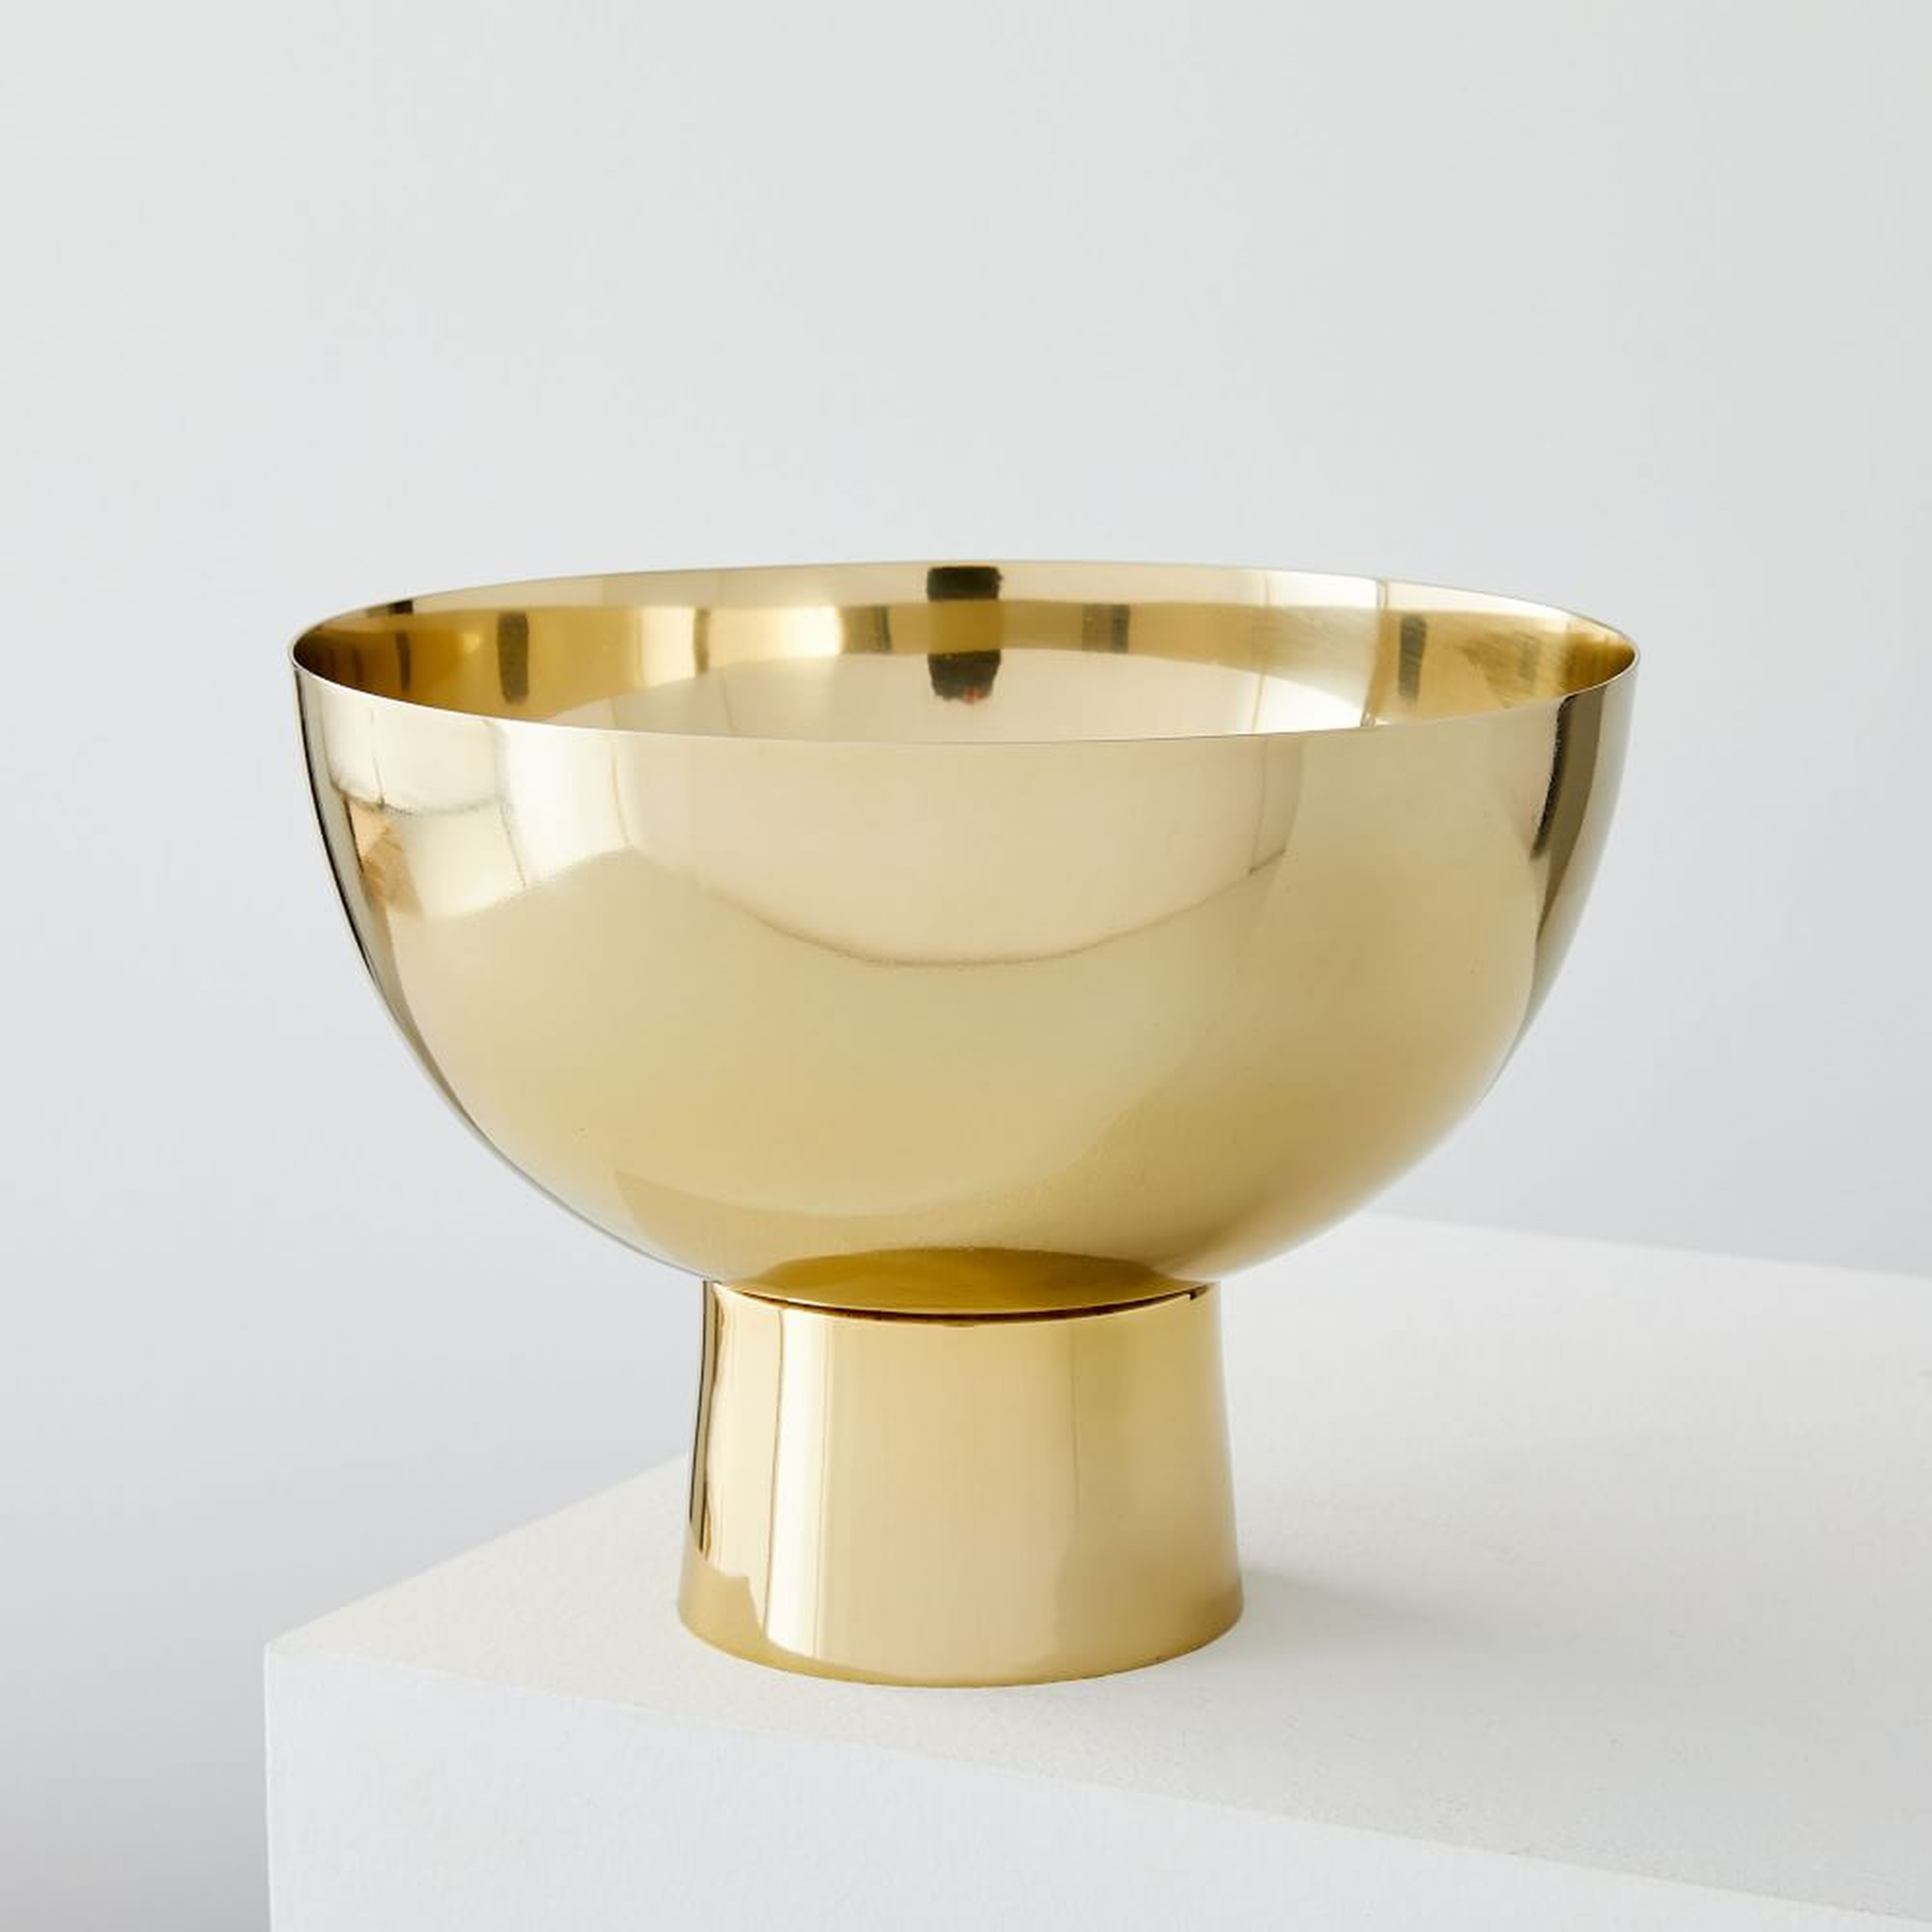 Foundation Brass Vases, Large Footed Bowl - West Elm